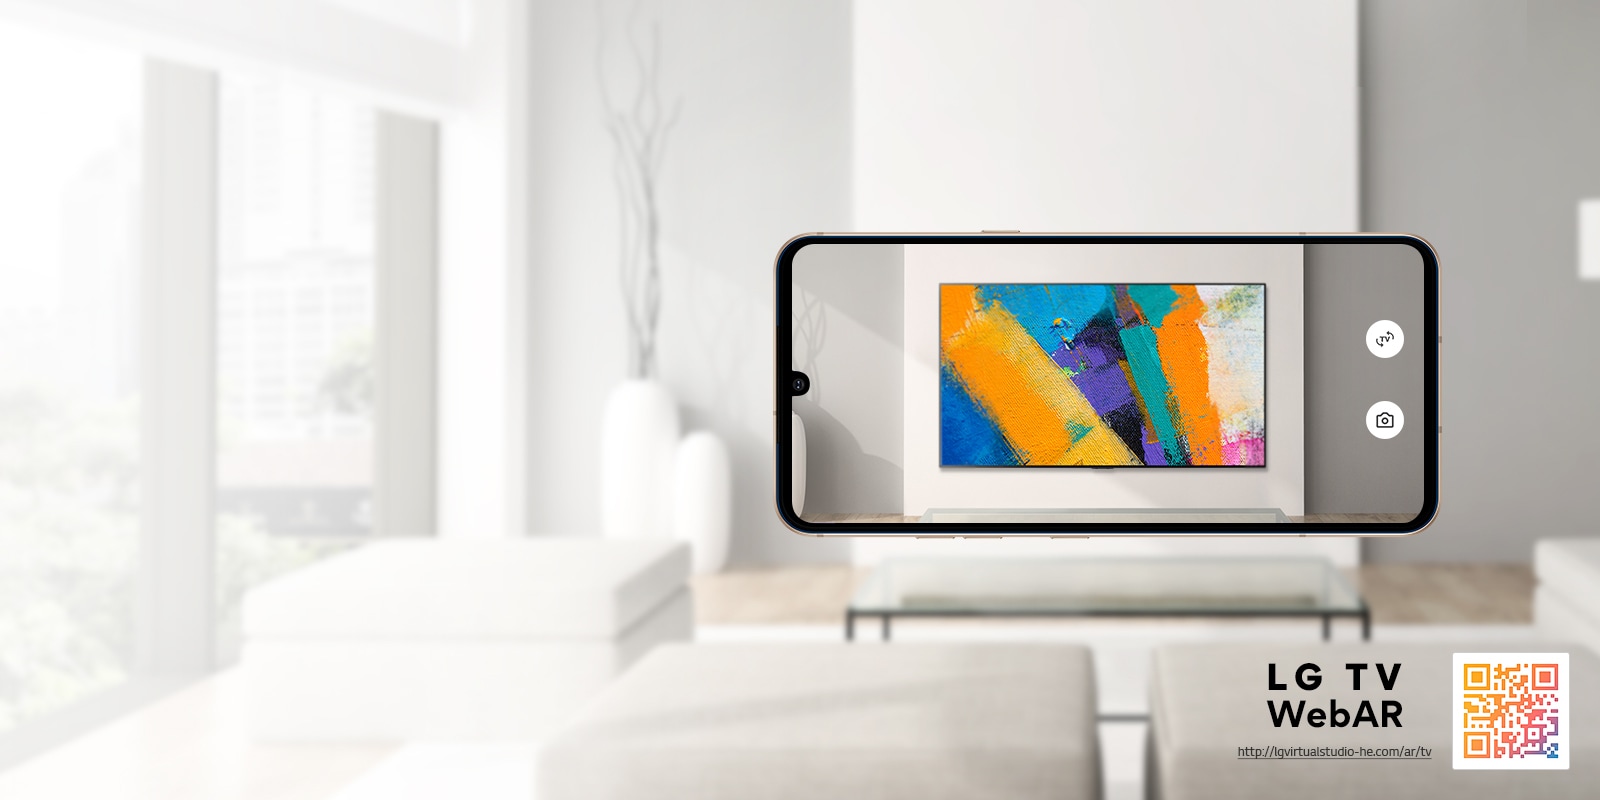 Това е изображение на симулация на LG OLED TV от WebAR. Изображенията от мобилен телефон се припокриват в минималистично пространство. В долния десен ъгъл има QR код.